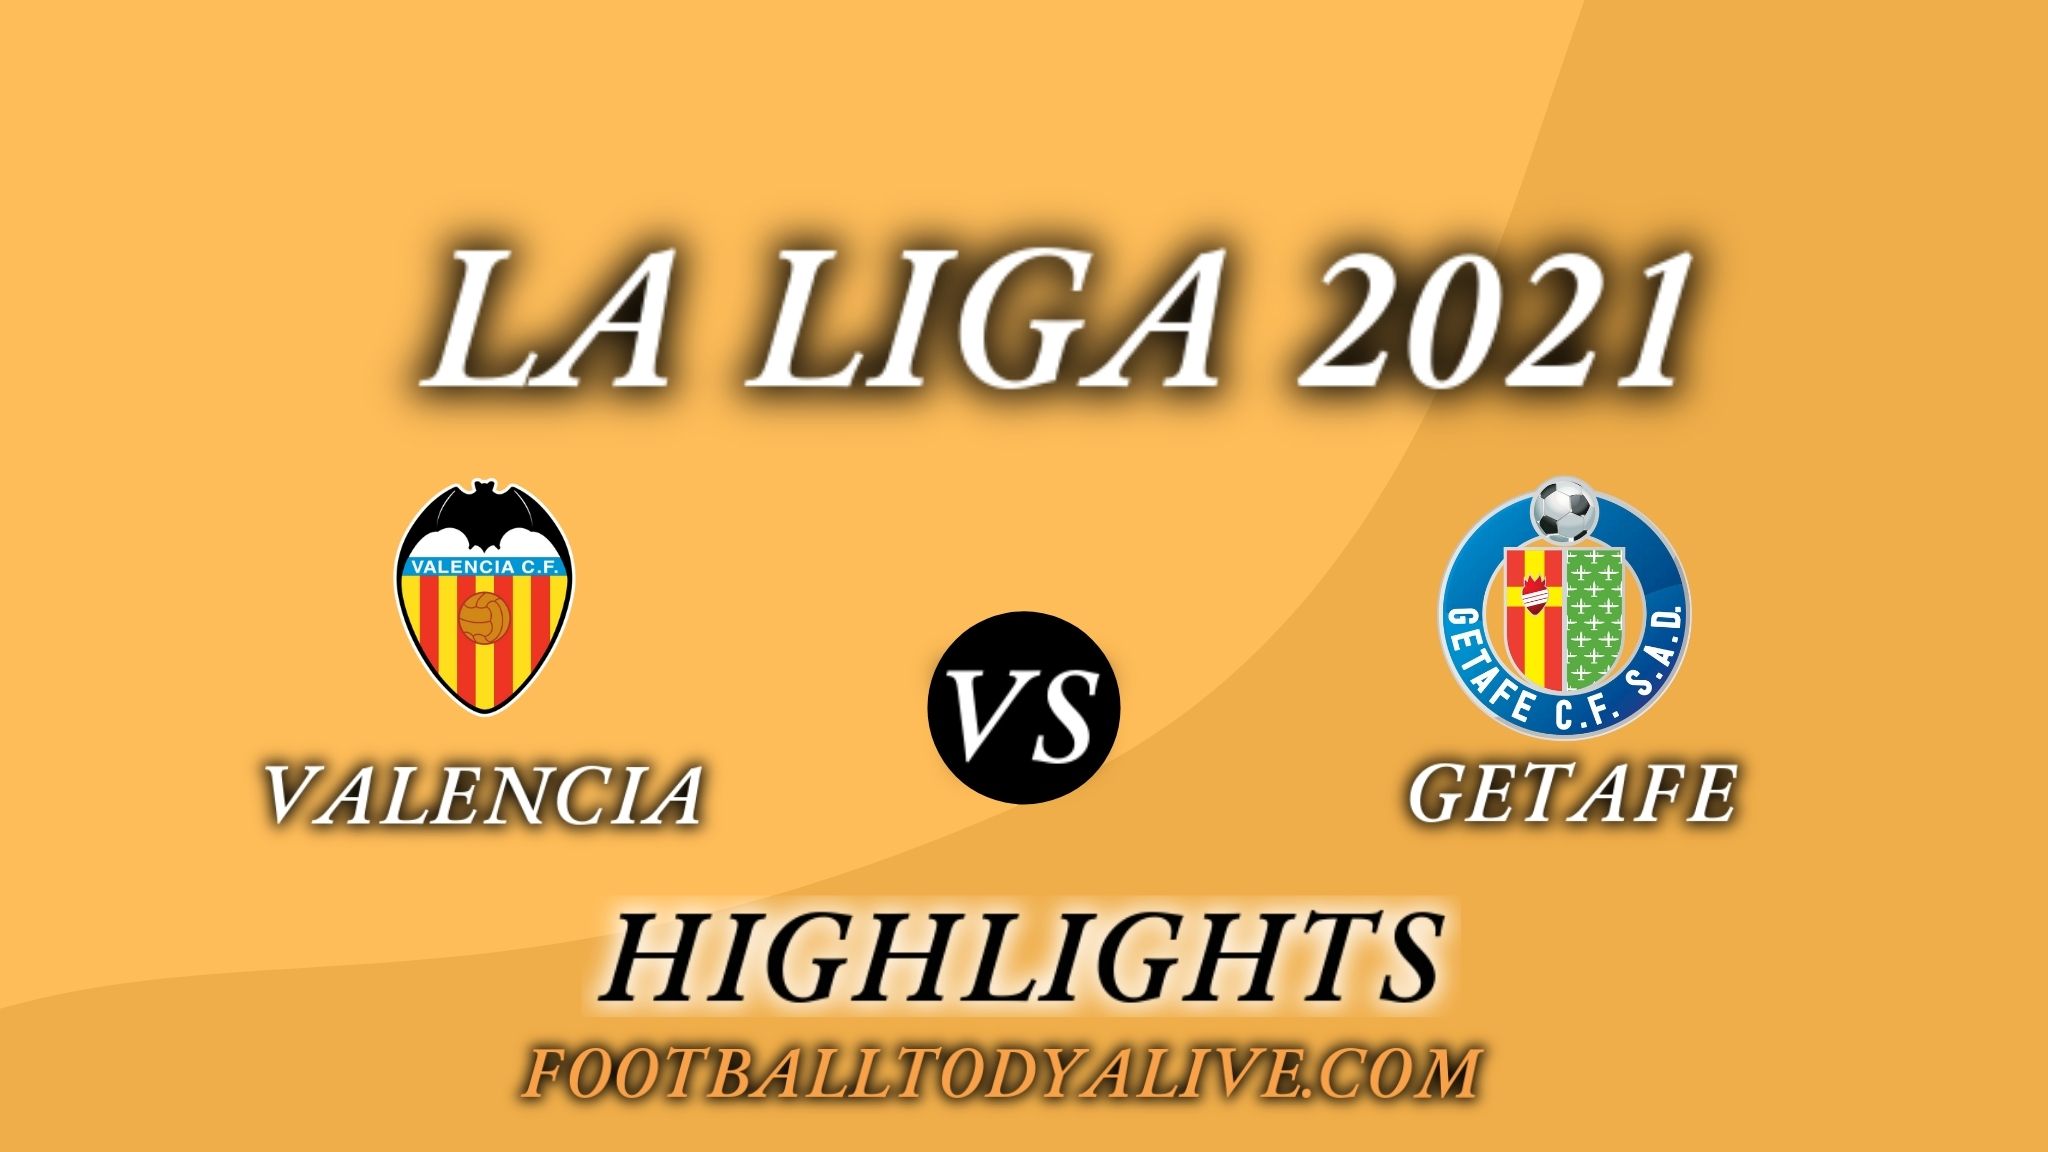 Valencia Vs Getafe Highlights 2021